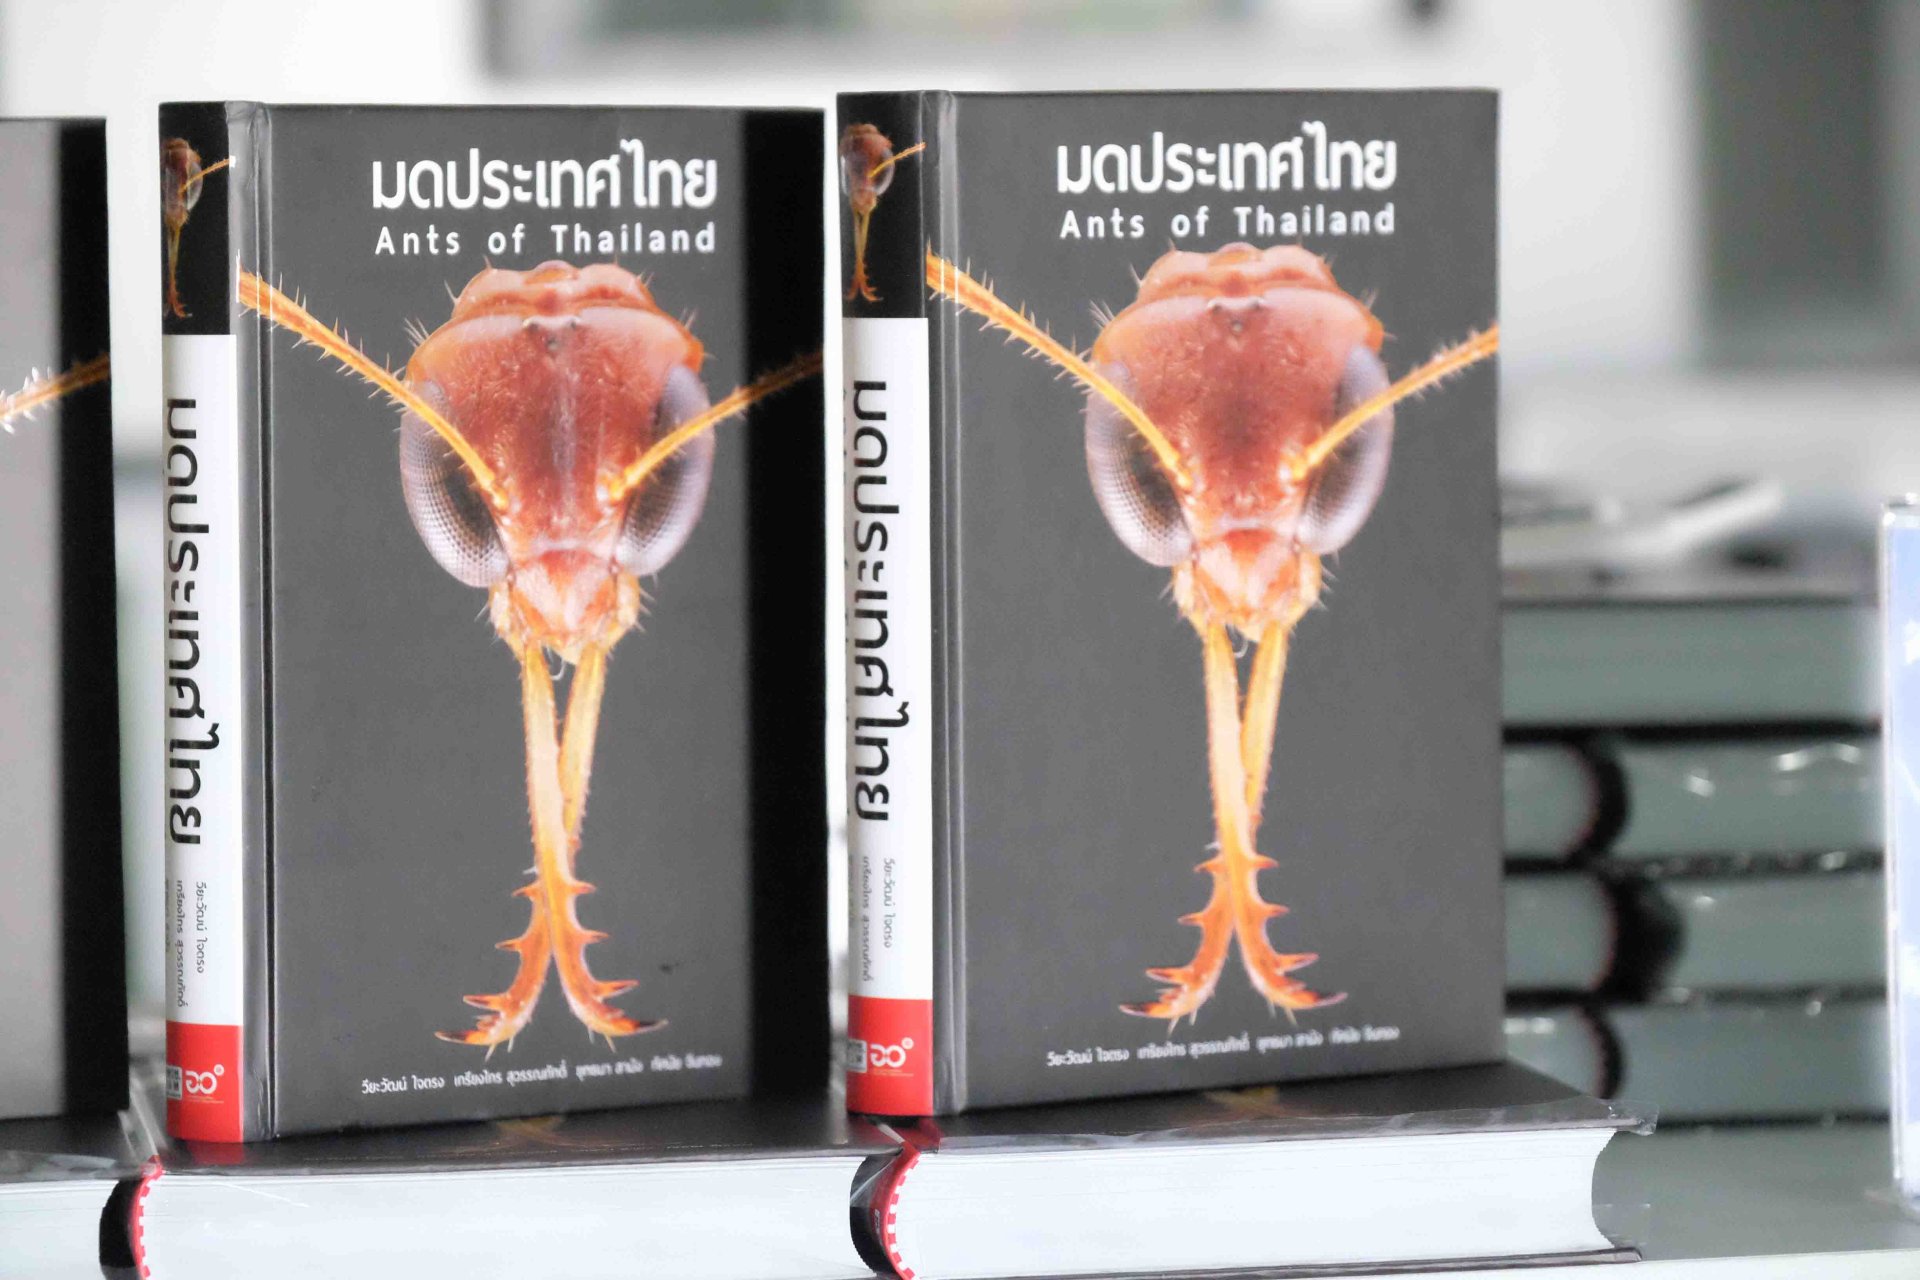 อพวช. เปิดตัว “หนังสือมดประเทศไทย” พร้อมผลักดันองค์ความรู้ด้านอนุกรมวิธานสู่สังคม